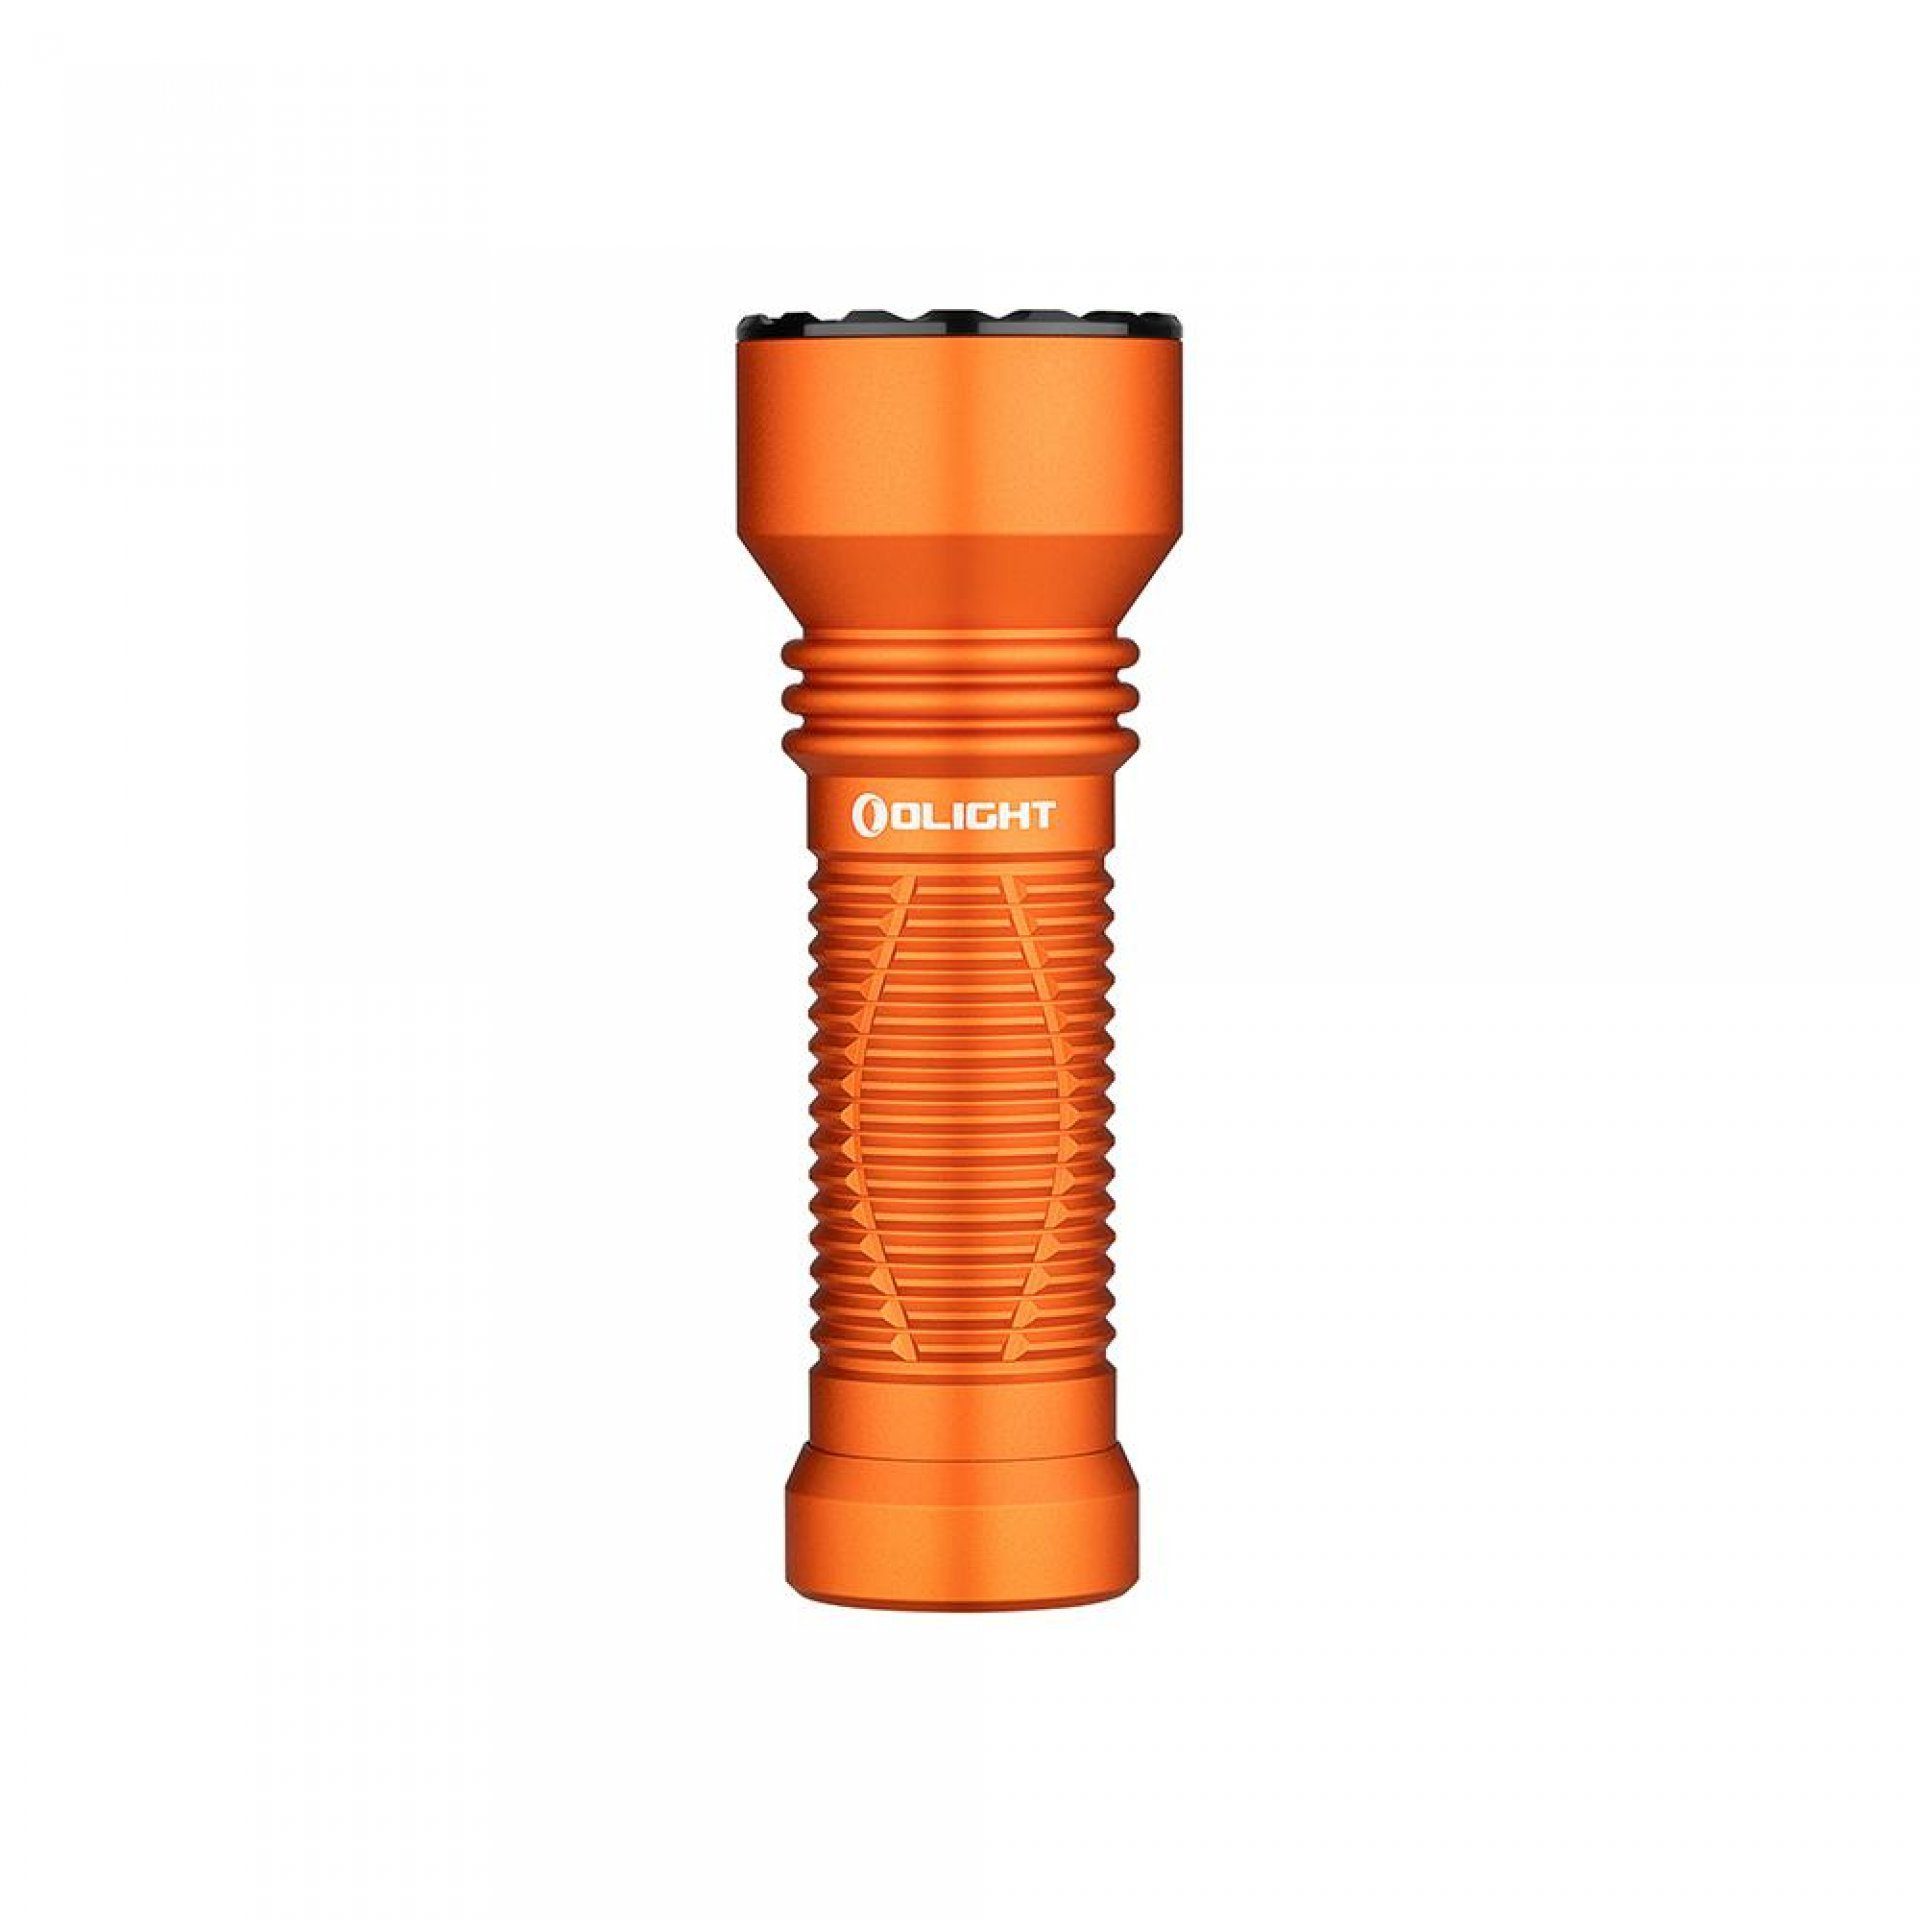 Patrouille, Taschenlampe Javelot wiederaufbare Notfall, einer LED Taschenlampe runden für Mini OLIGHT IPX8 mit Orange LED Camping taktische zoombare Lichtquelle, Handlampe